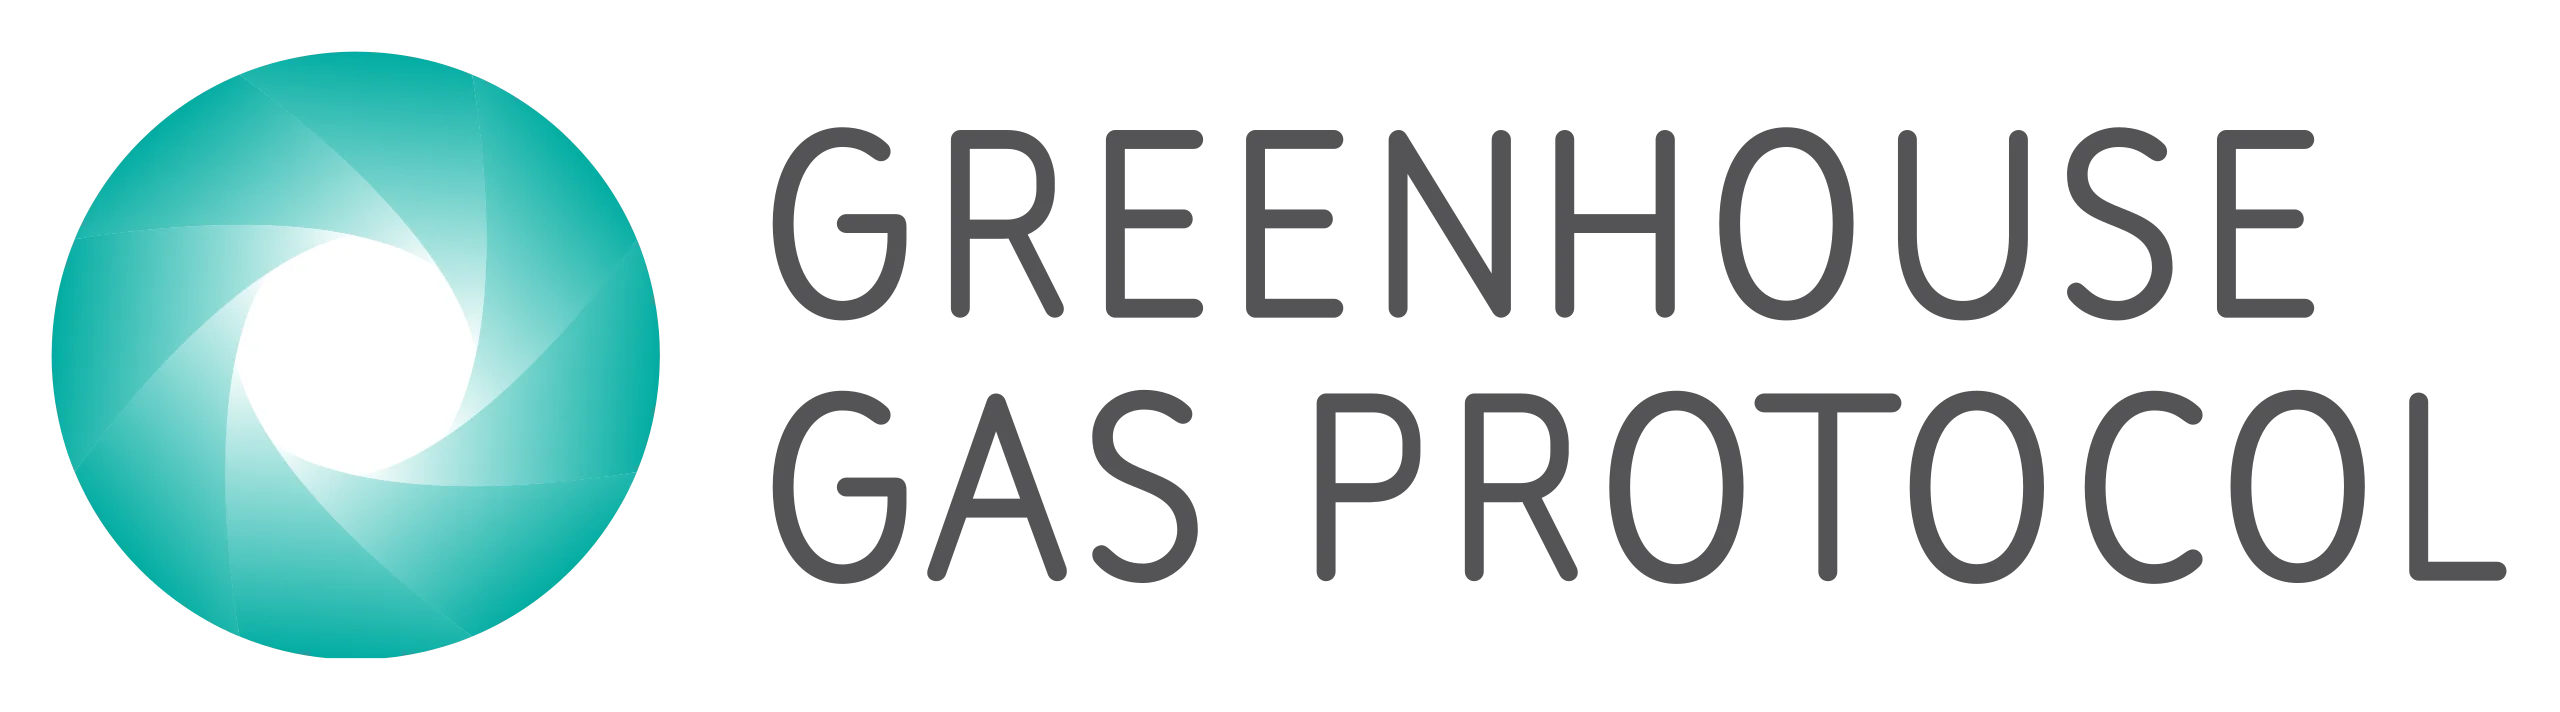 GHG_Protocol_Logo